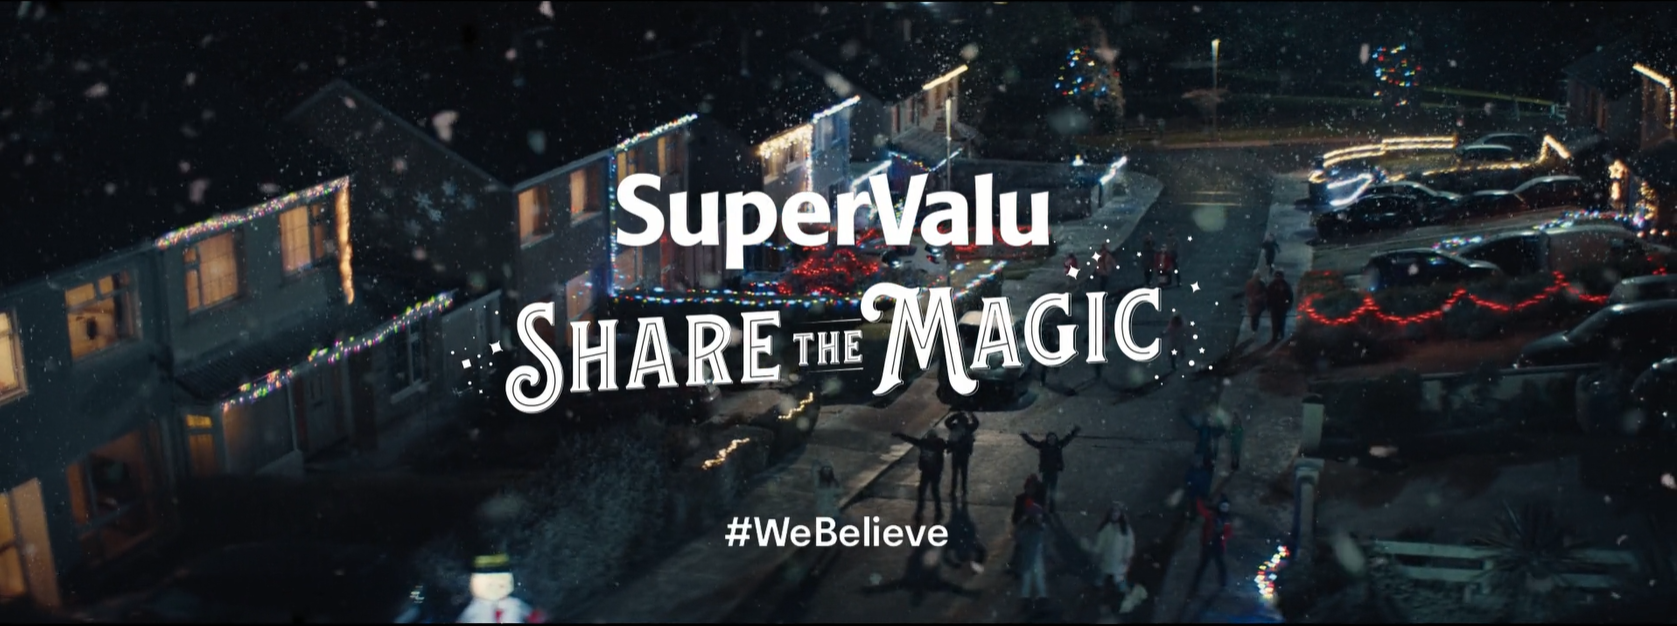 SUPERVALU | SHARE THE MAGIC